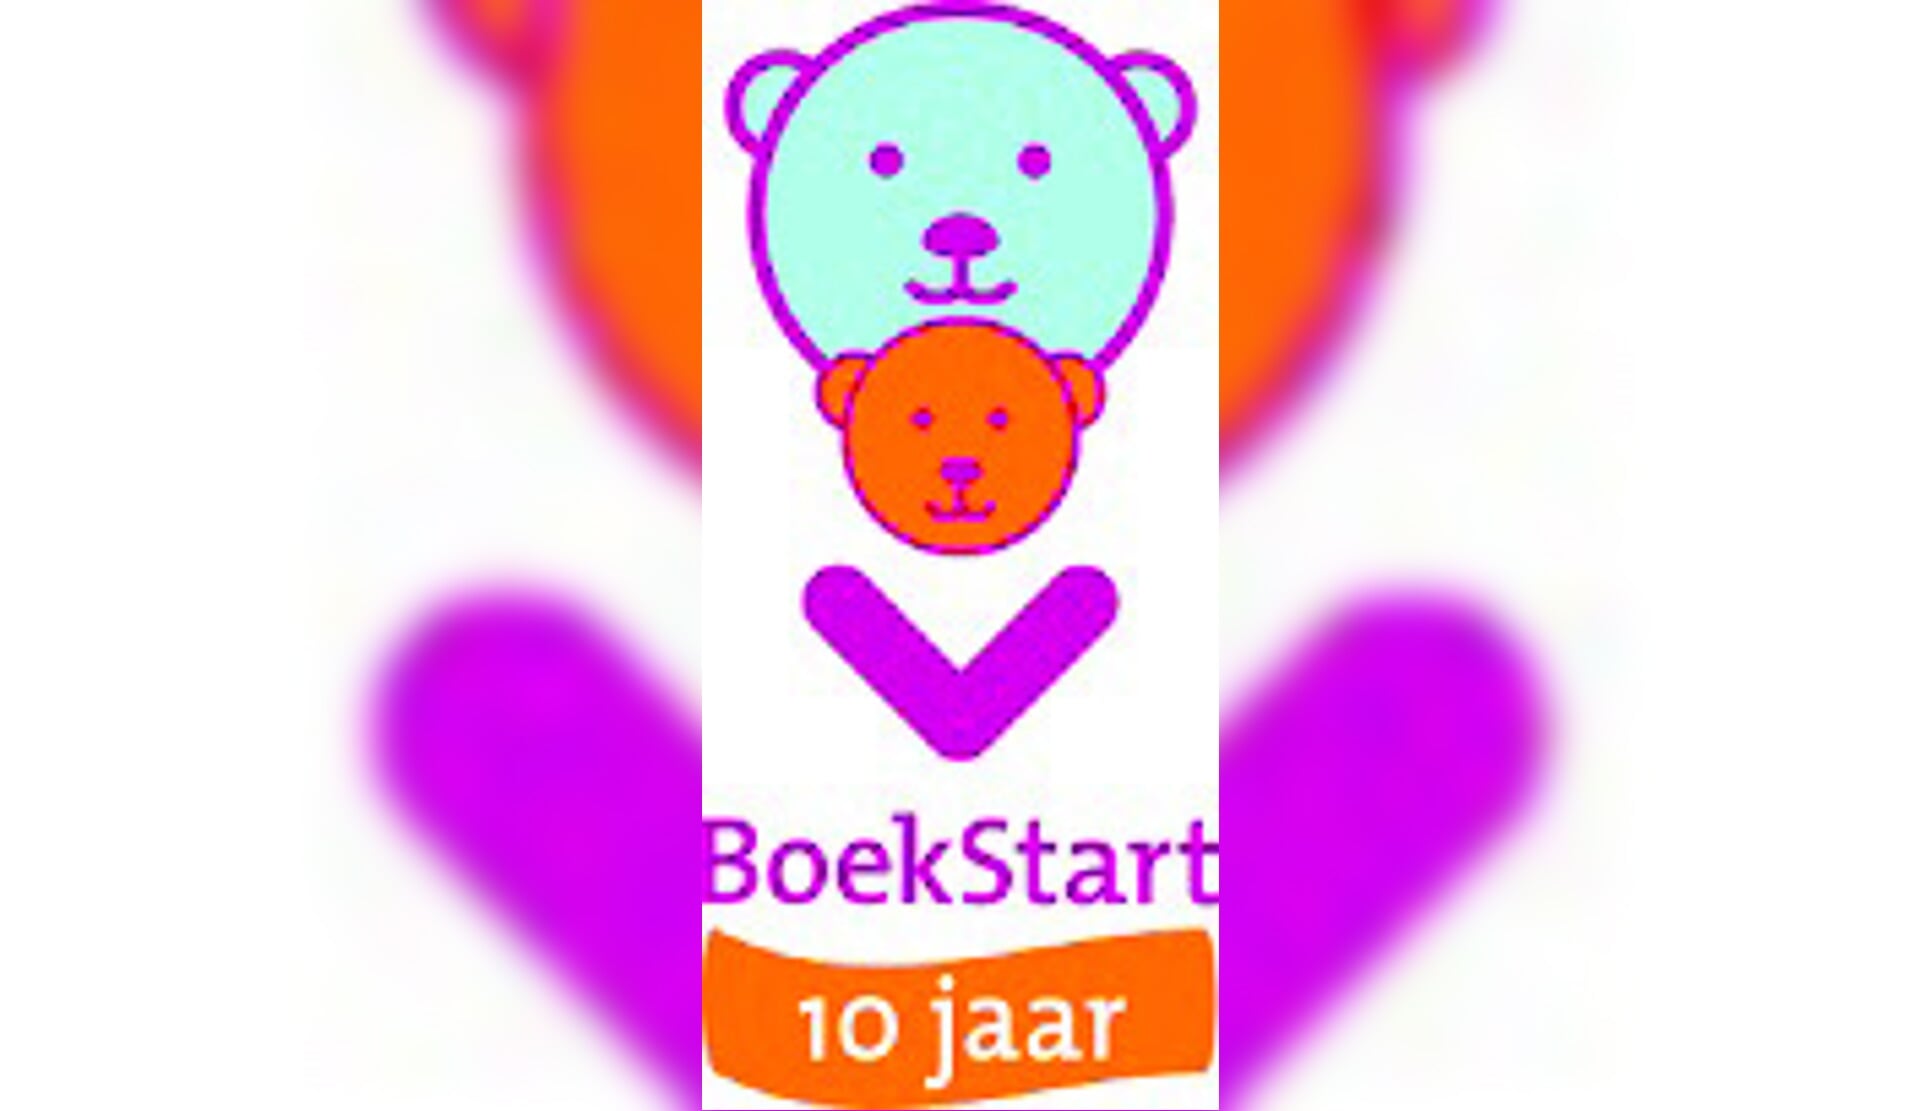 Het logo van 'tien jaar BoekStart'. (foto aangeleverd) 